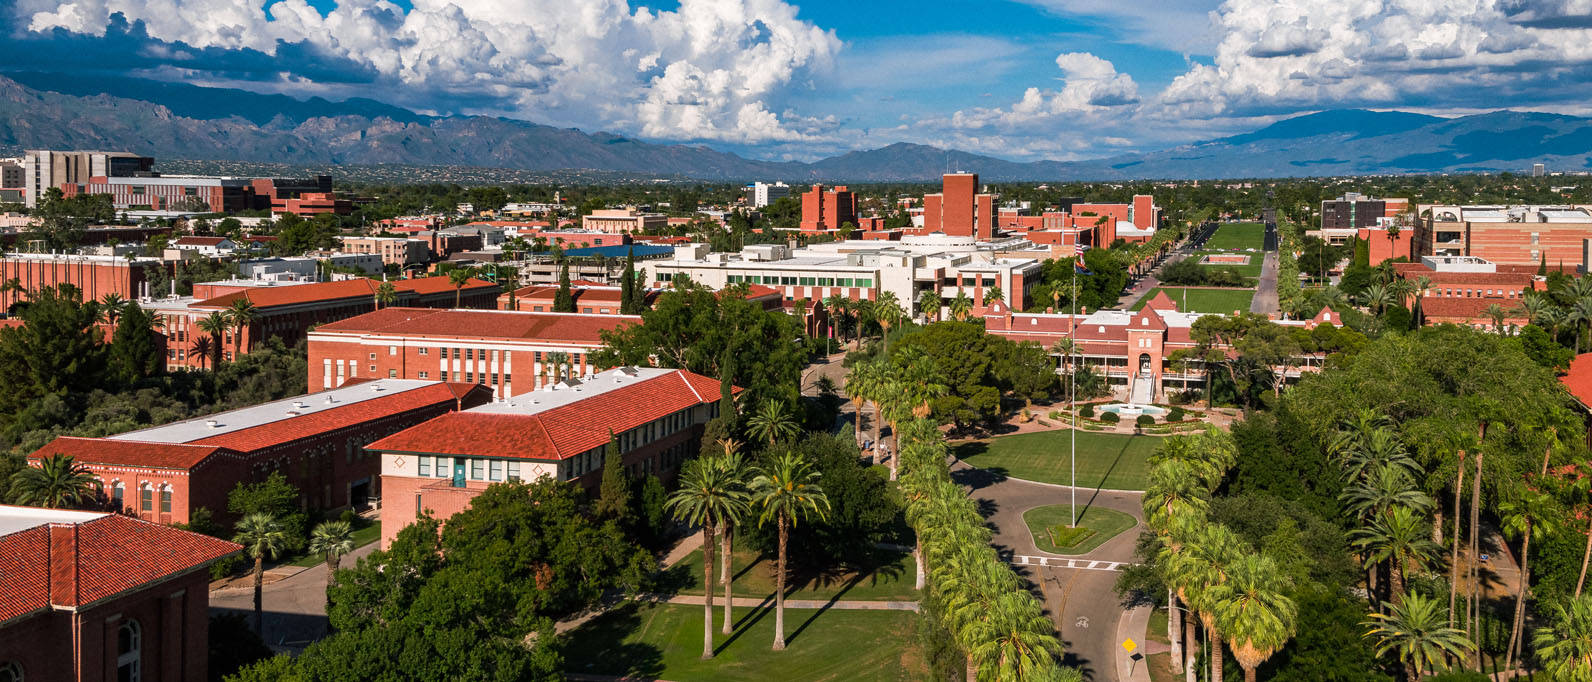 University Of Arizona Roofs Background